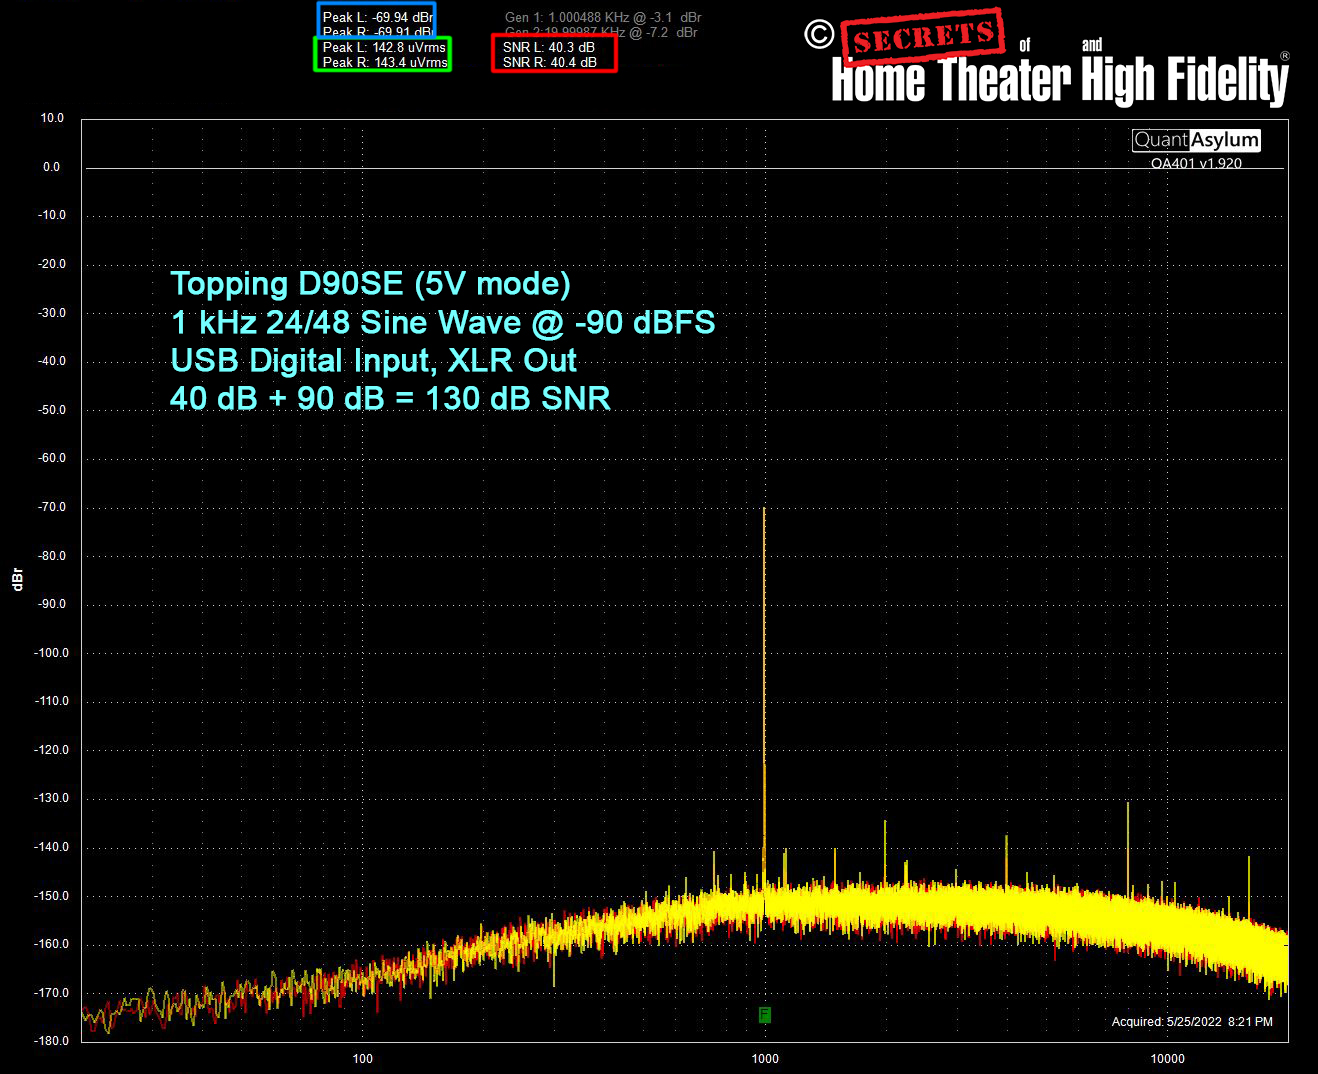 Topping D90SE, SNR test, 5V mode